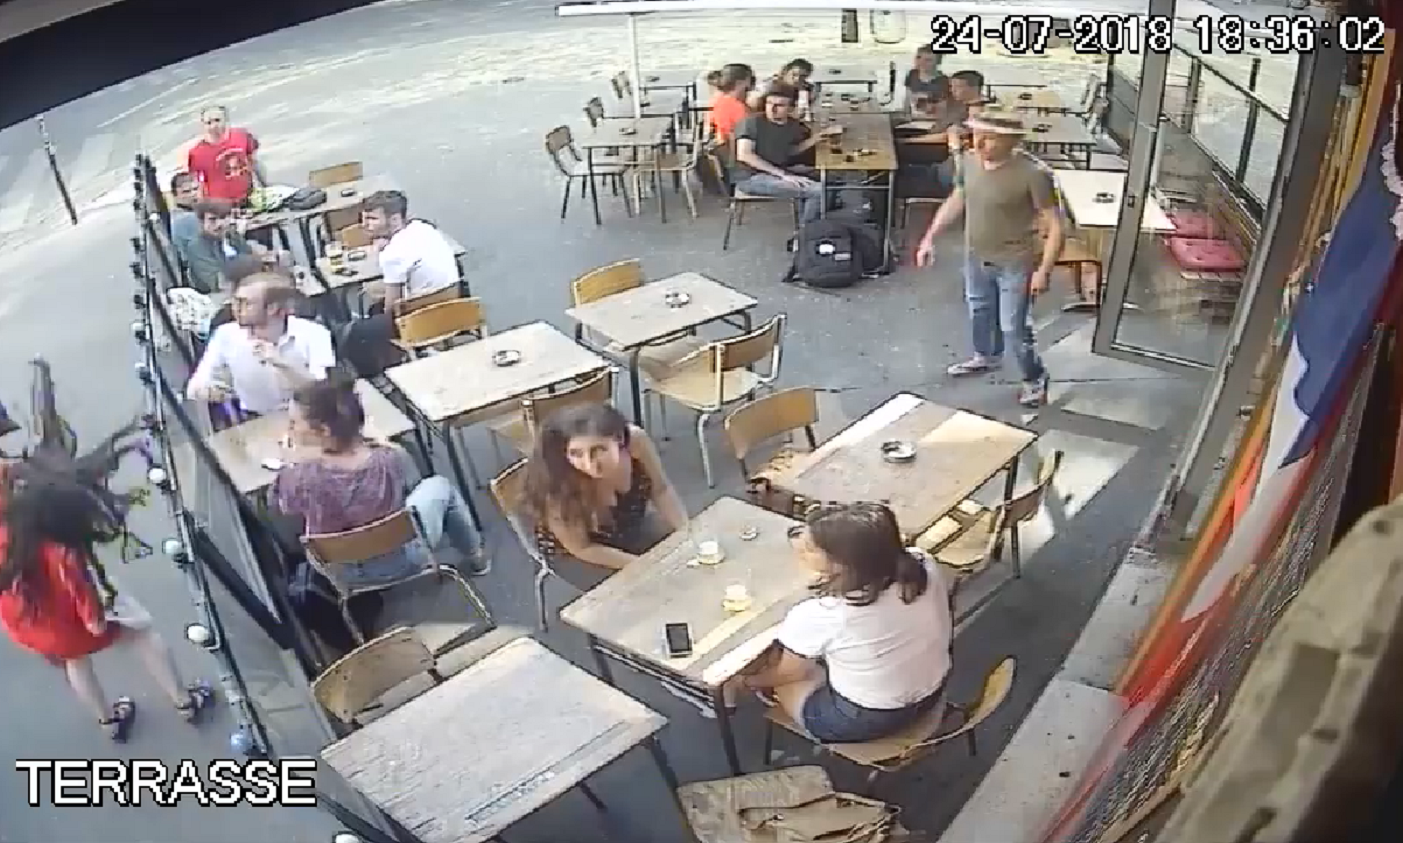 La agresión a una chica reabre el debate en Francia sobre el acoso callejero